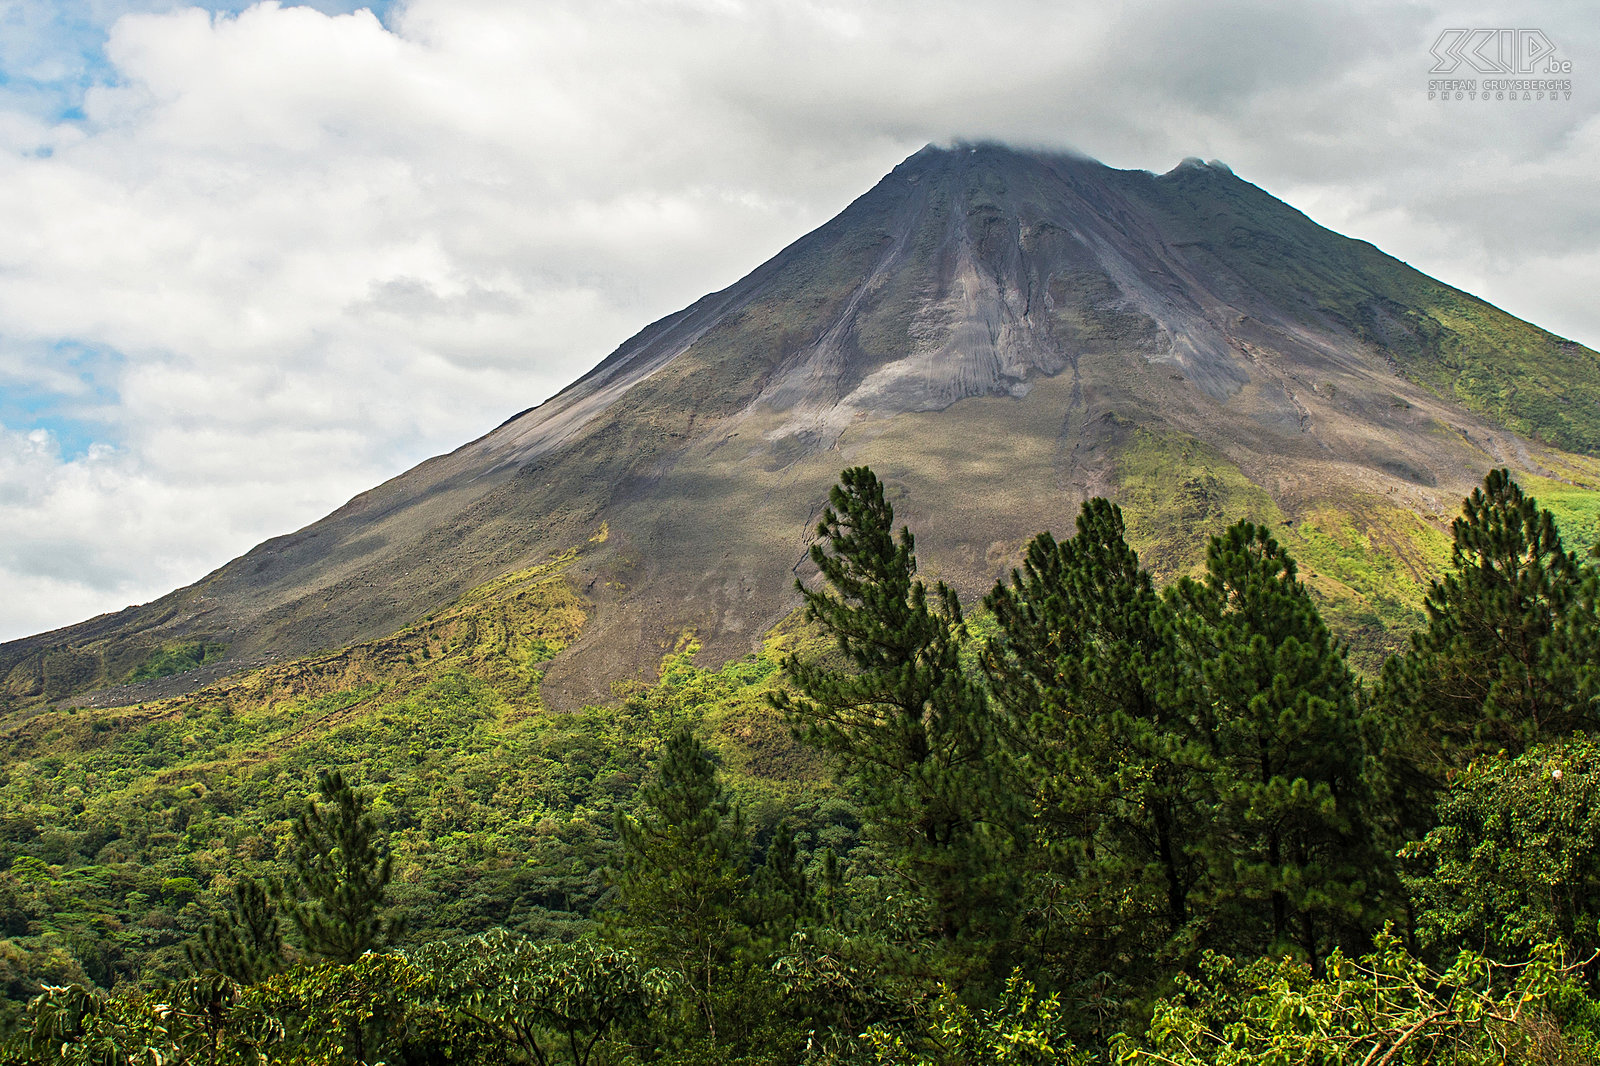 Arenal vulkaan De Arenal vulkaan is kegelvormig met een krater en ongeveer 1633 meter hoog. Het is een actieve vulkaan maar sinds 2010 blijkt de vulkanische activiteit af te nemen en explosies zijn zeldzaam geworden. In 1968 brak de vulkaan onverwacht uit en het vernietigde het kleine stadje Tabacón. Stefan Cruysberghs